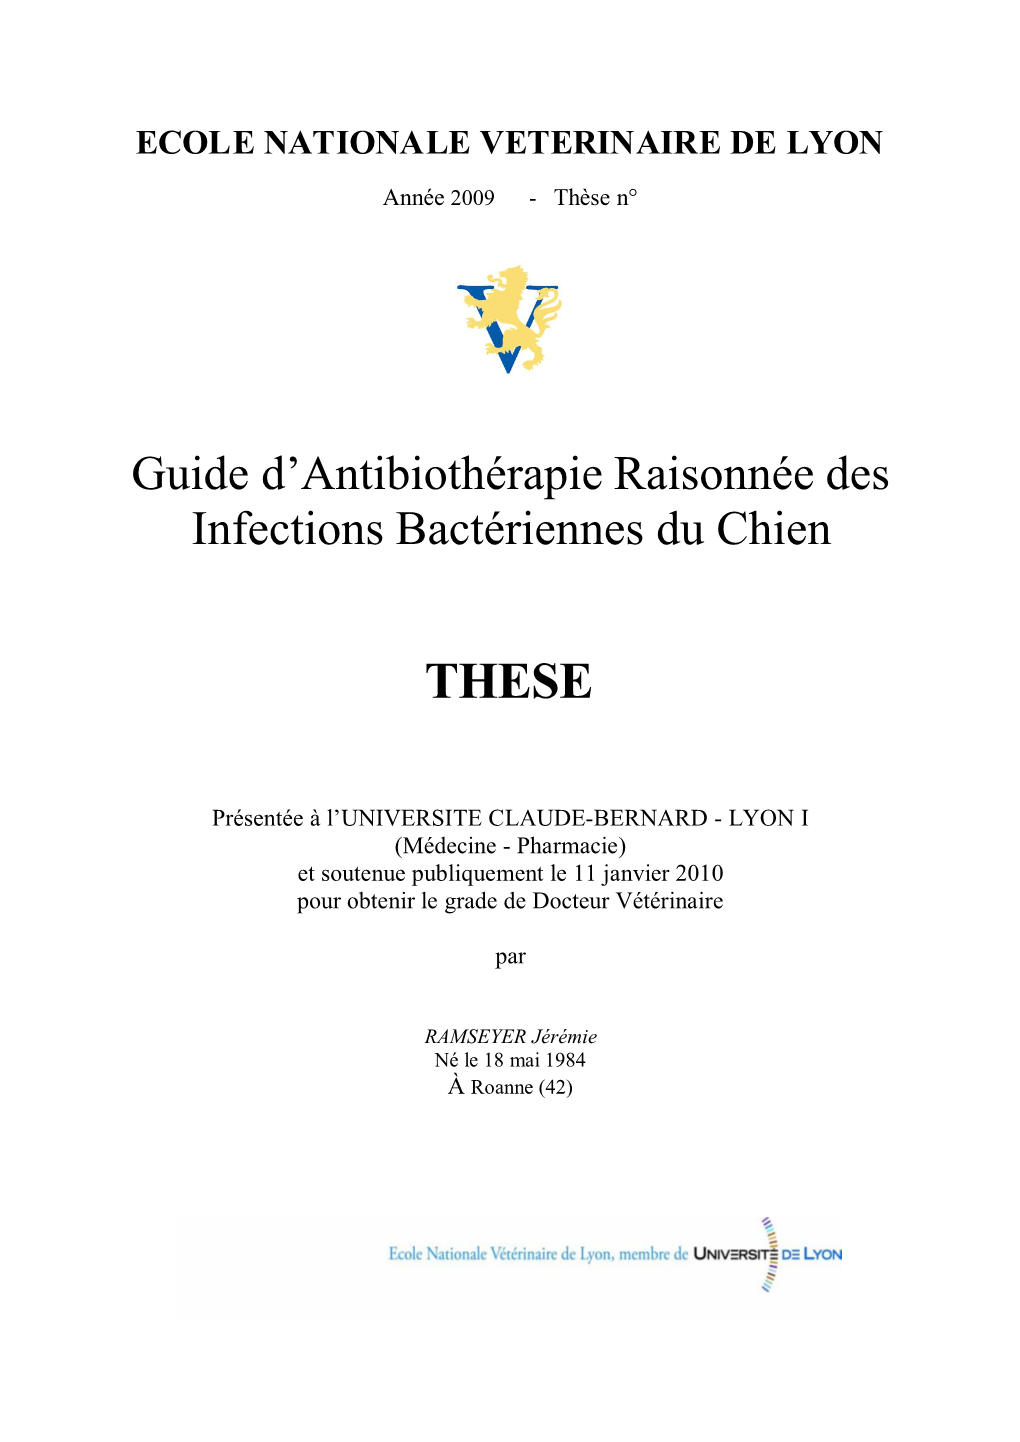 Guide D'antibiothérapie Raisonnée Des Infections Bactériennes Du Chien